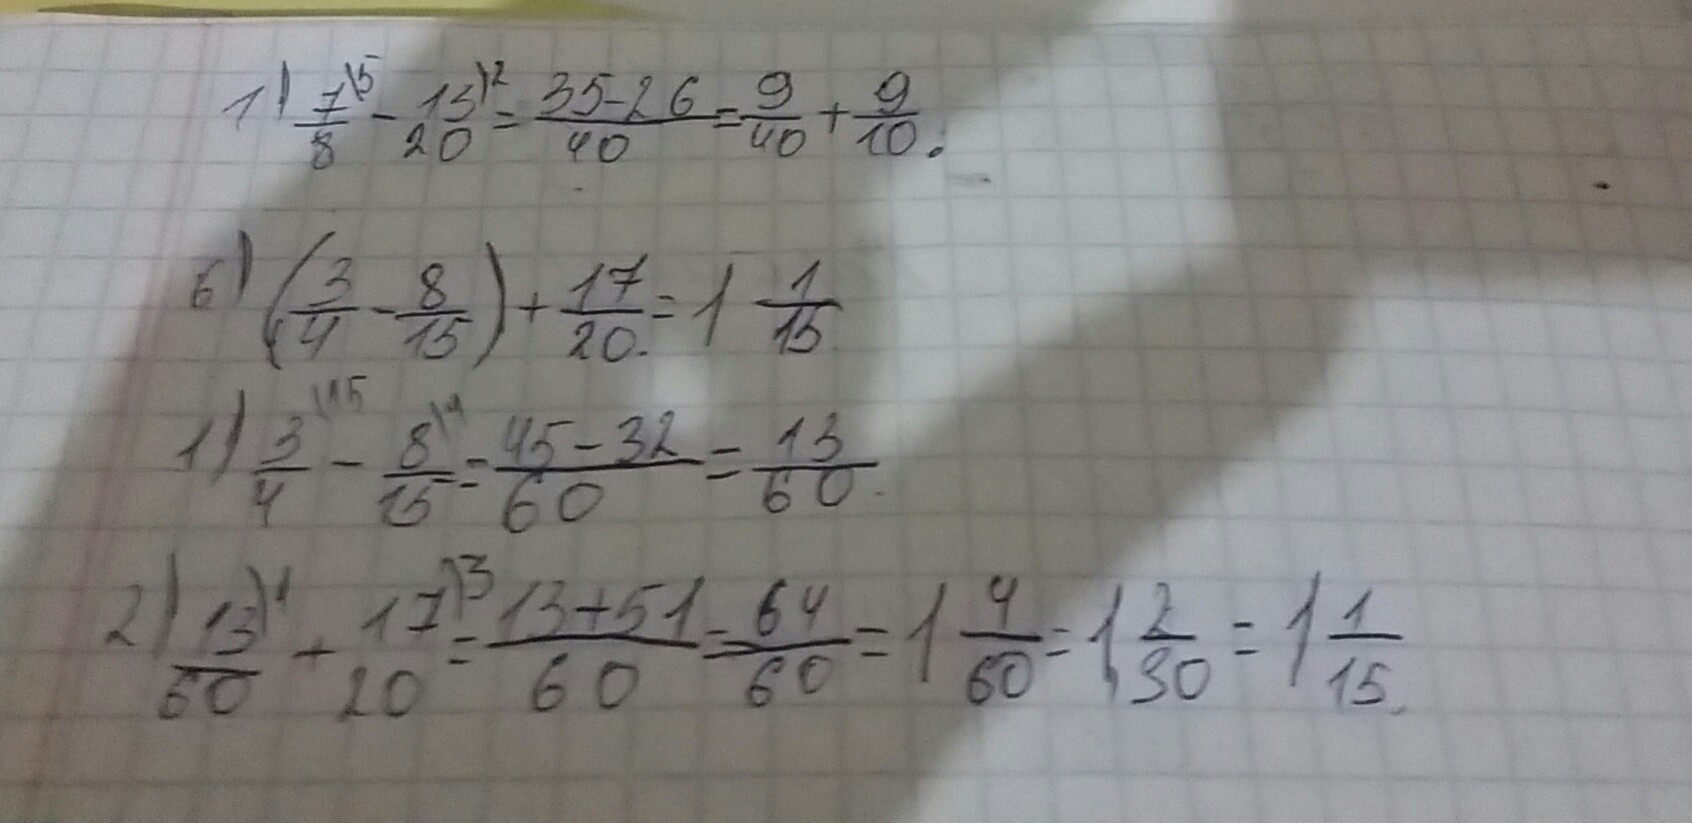 8 3 18 решить пример. 1/8+7/12 Решение. -(9-А)-25 решить. Решение примера 15:4. Решить пример (а+3)(а-3)-(2а+5)(2а-5)+(3а+1)(3а-1)=.